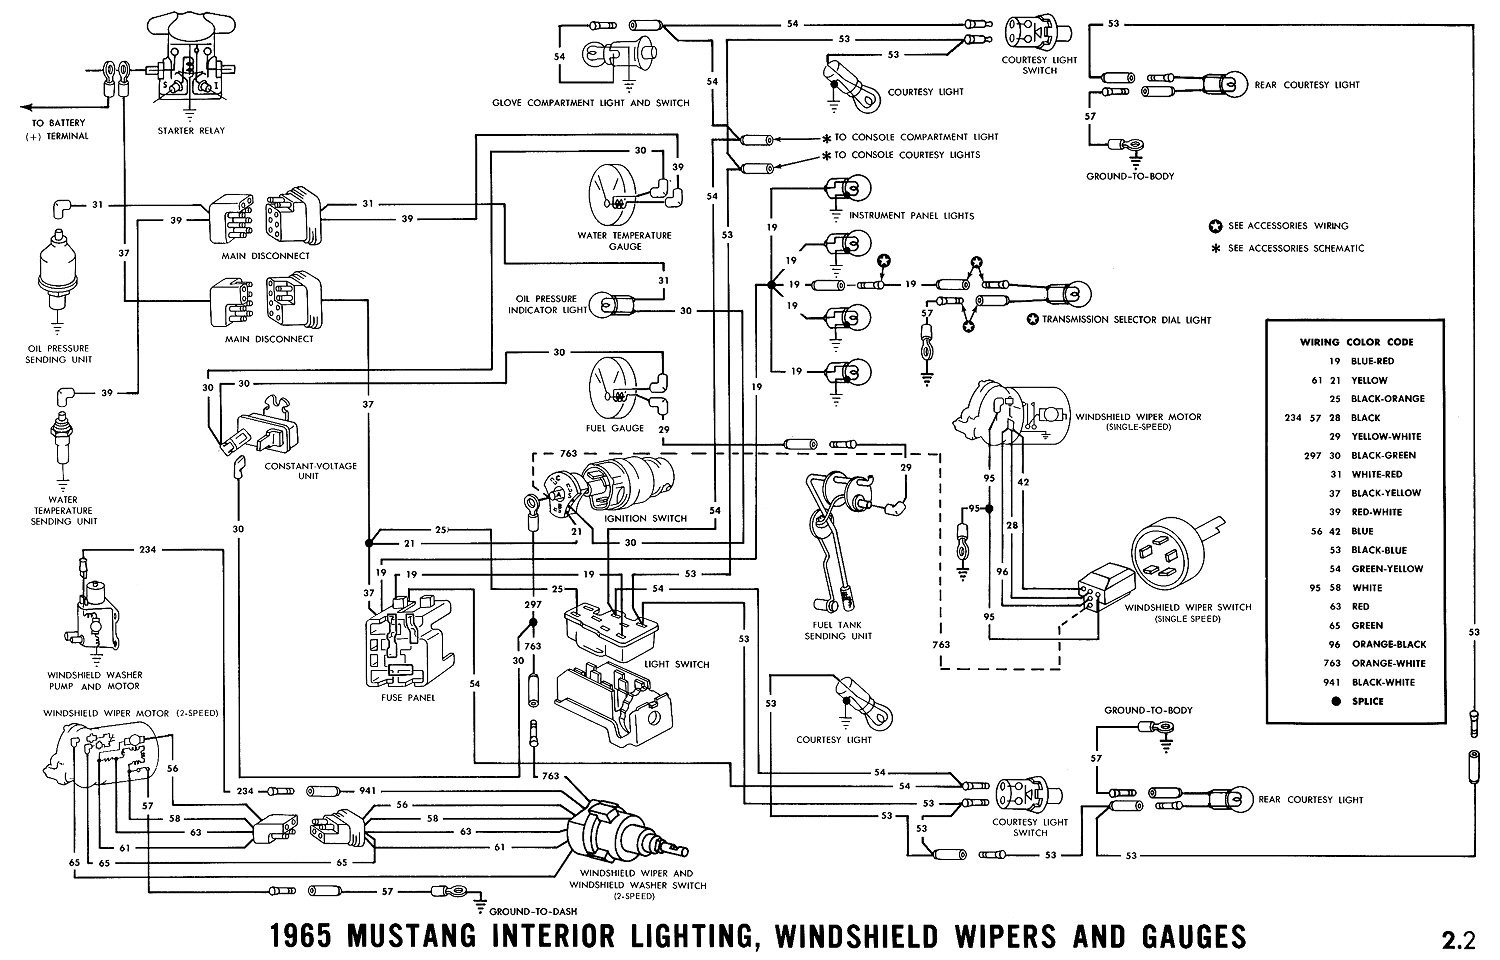 1965 Mustang Wiring Diagrams Average Joe Restoration Beautiful Diagram